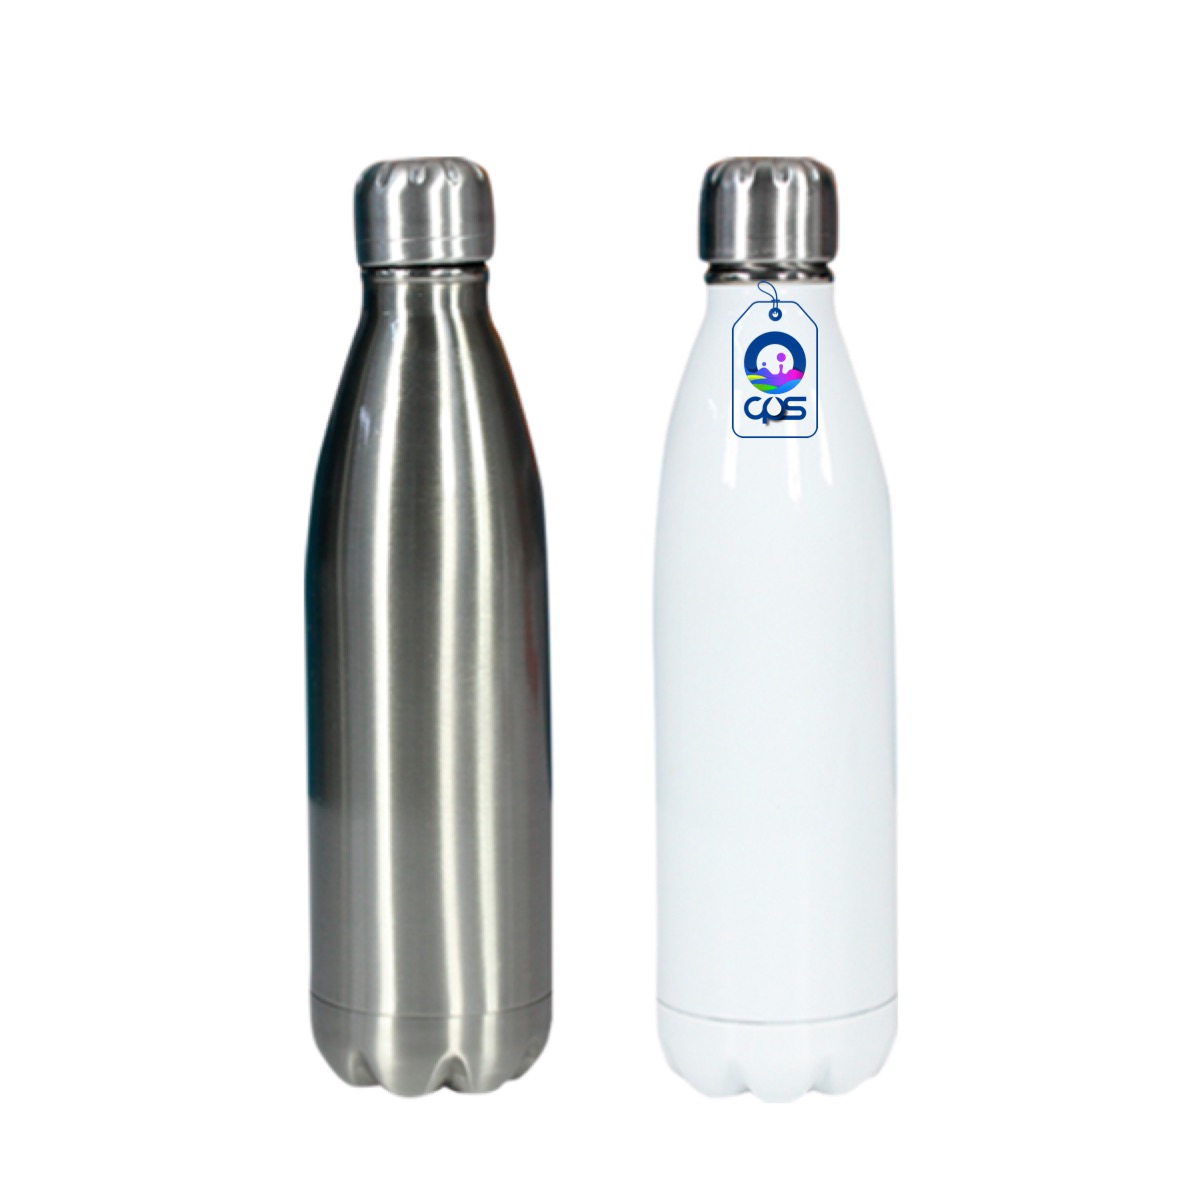 Botella de agua - botella de 500 ml para impresión por sublimación - blanco  Blanco \ 500 ml, GADGETS \ BOTELLAS Y TERMOS